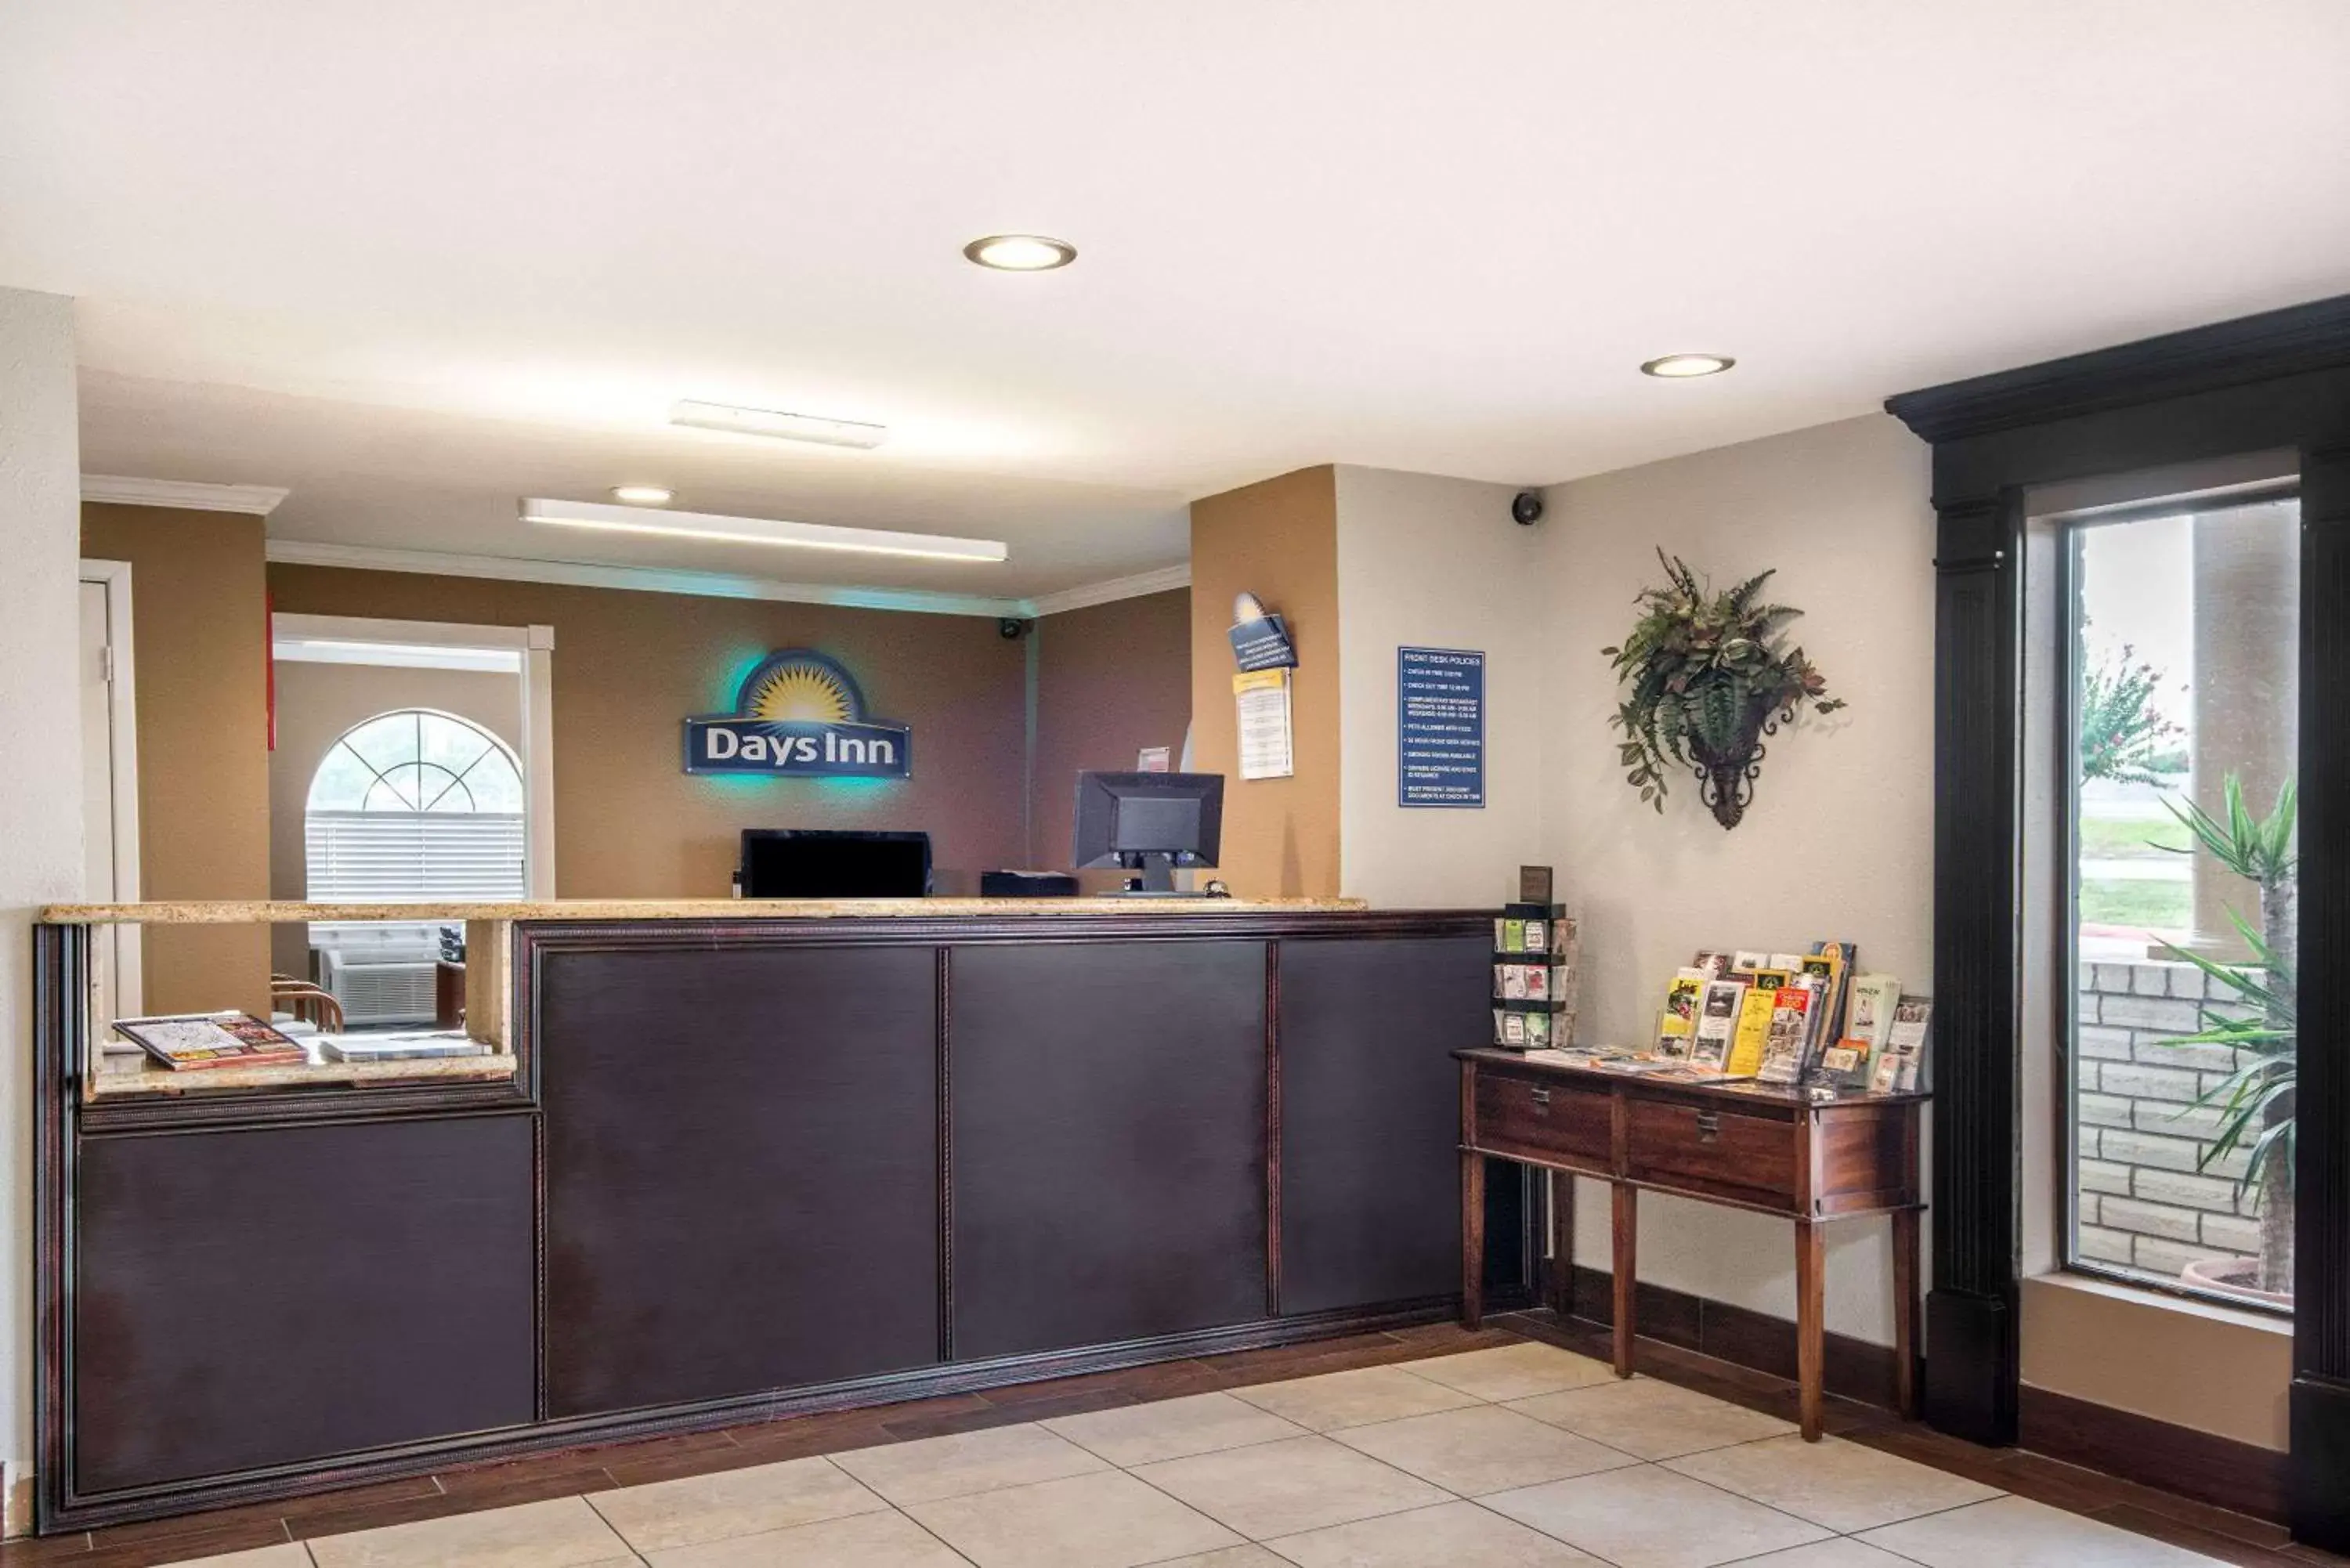 Lobby or reception, Lobby/Reception in Days Inn by Wyndham New Braunfels